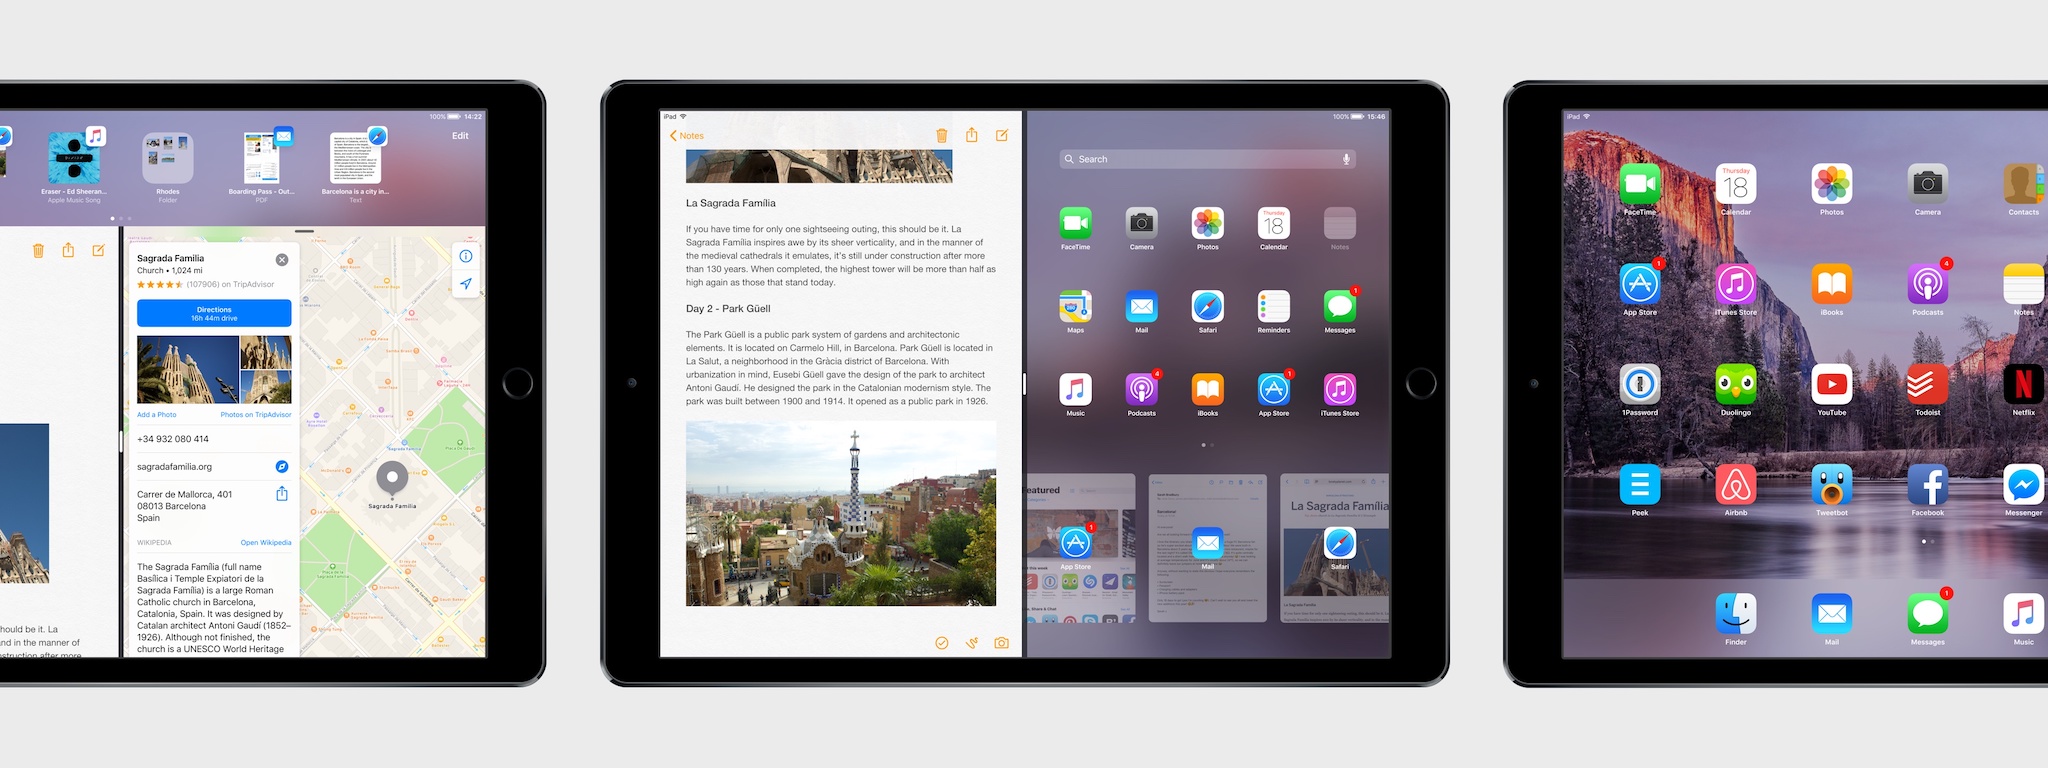 Apple tung 6 video nói về các tính năng mới cho iPad của iOS 11